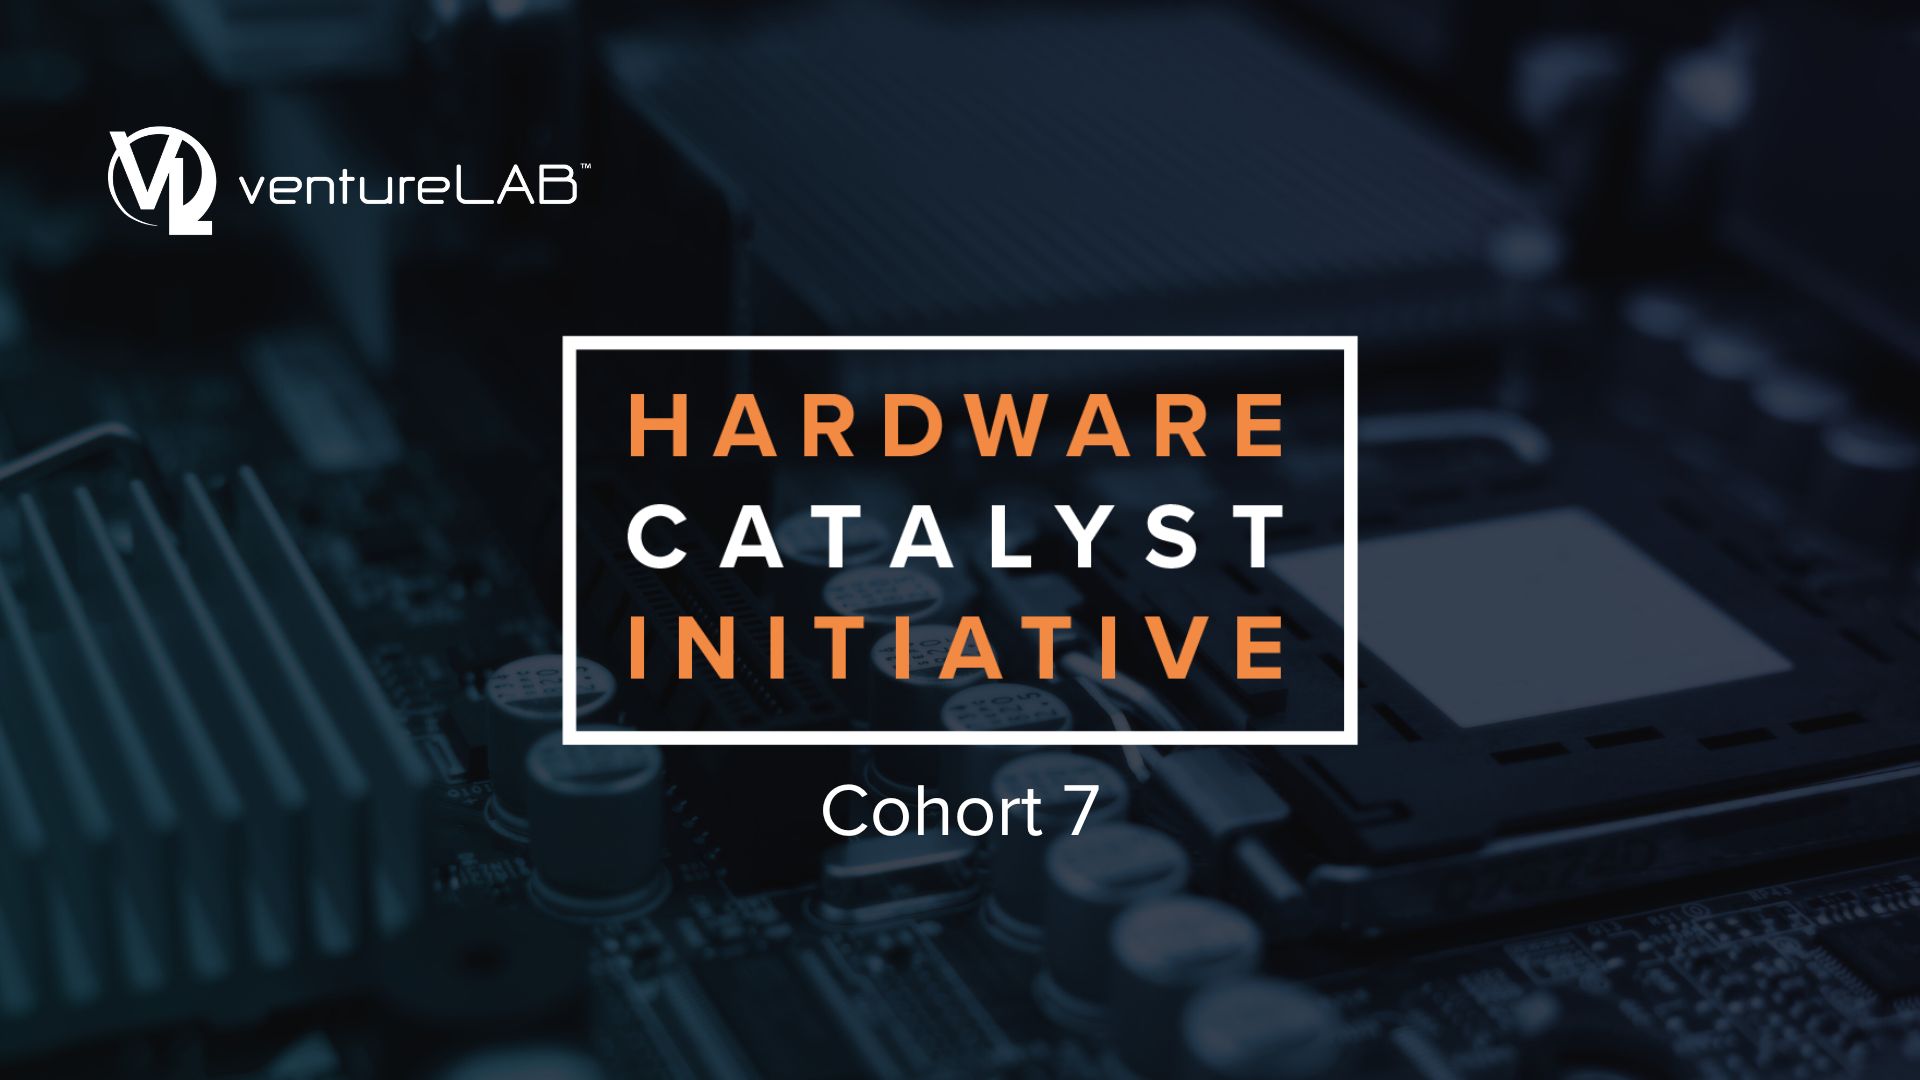 ventureLAB Hardware Catalyst Initiative Cohort 7 Announcement Cover